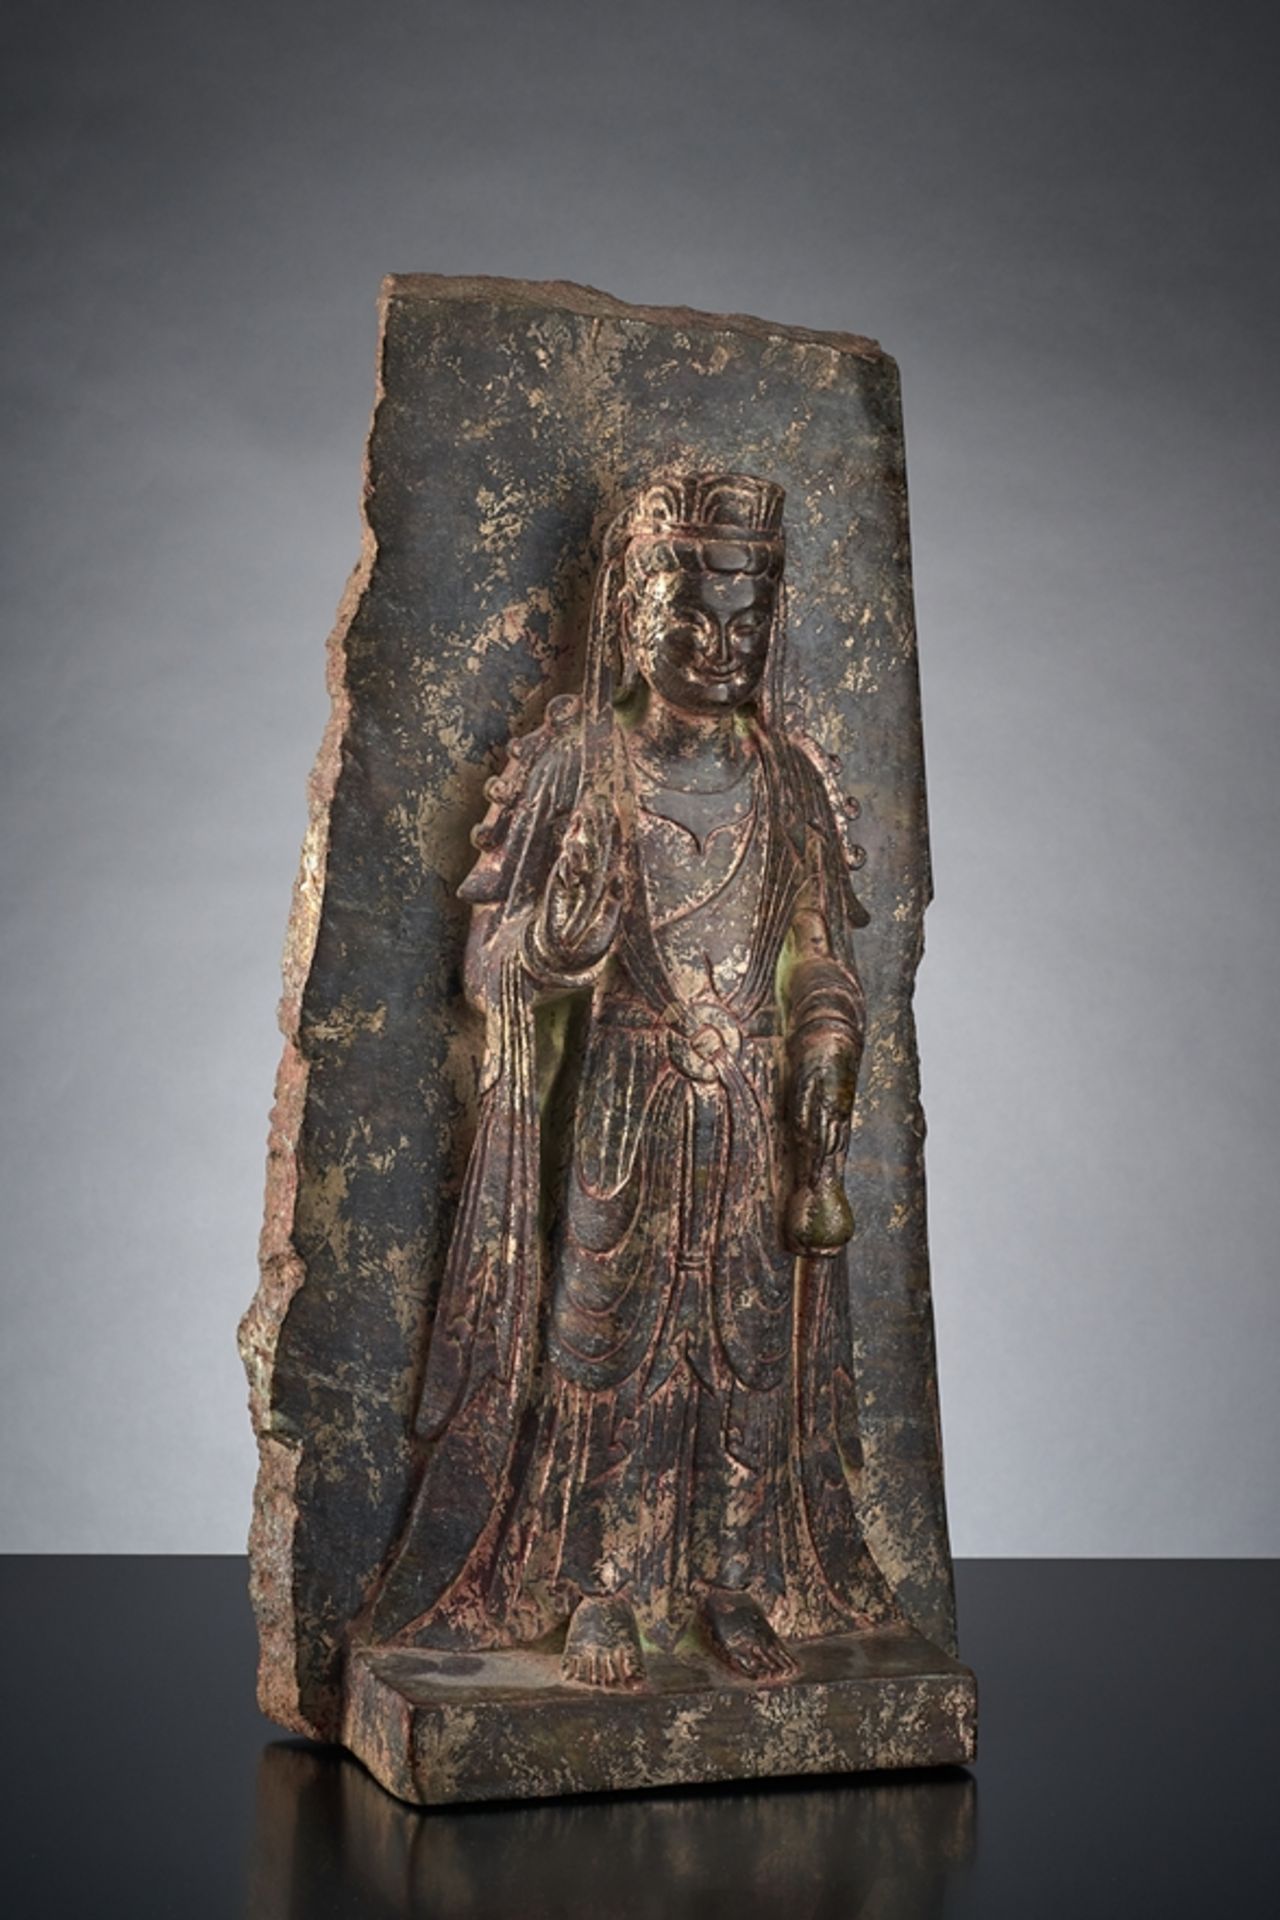 Kleine Stele eines stehenden Bodhisattva Chuan Yin. Auf Plinthensockel vor Wandhintergrund stehend